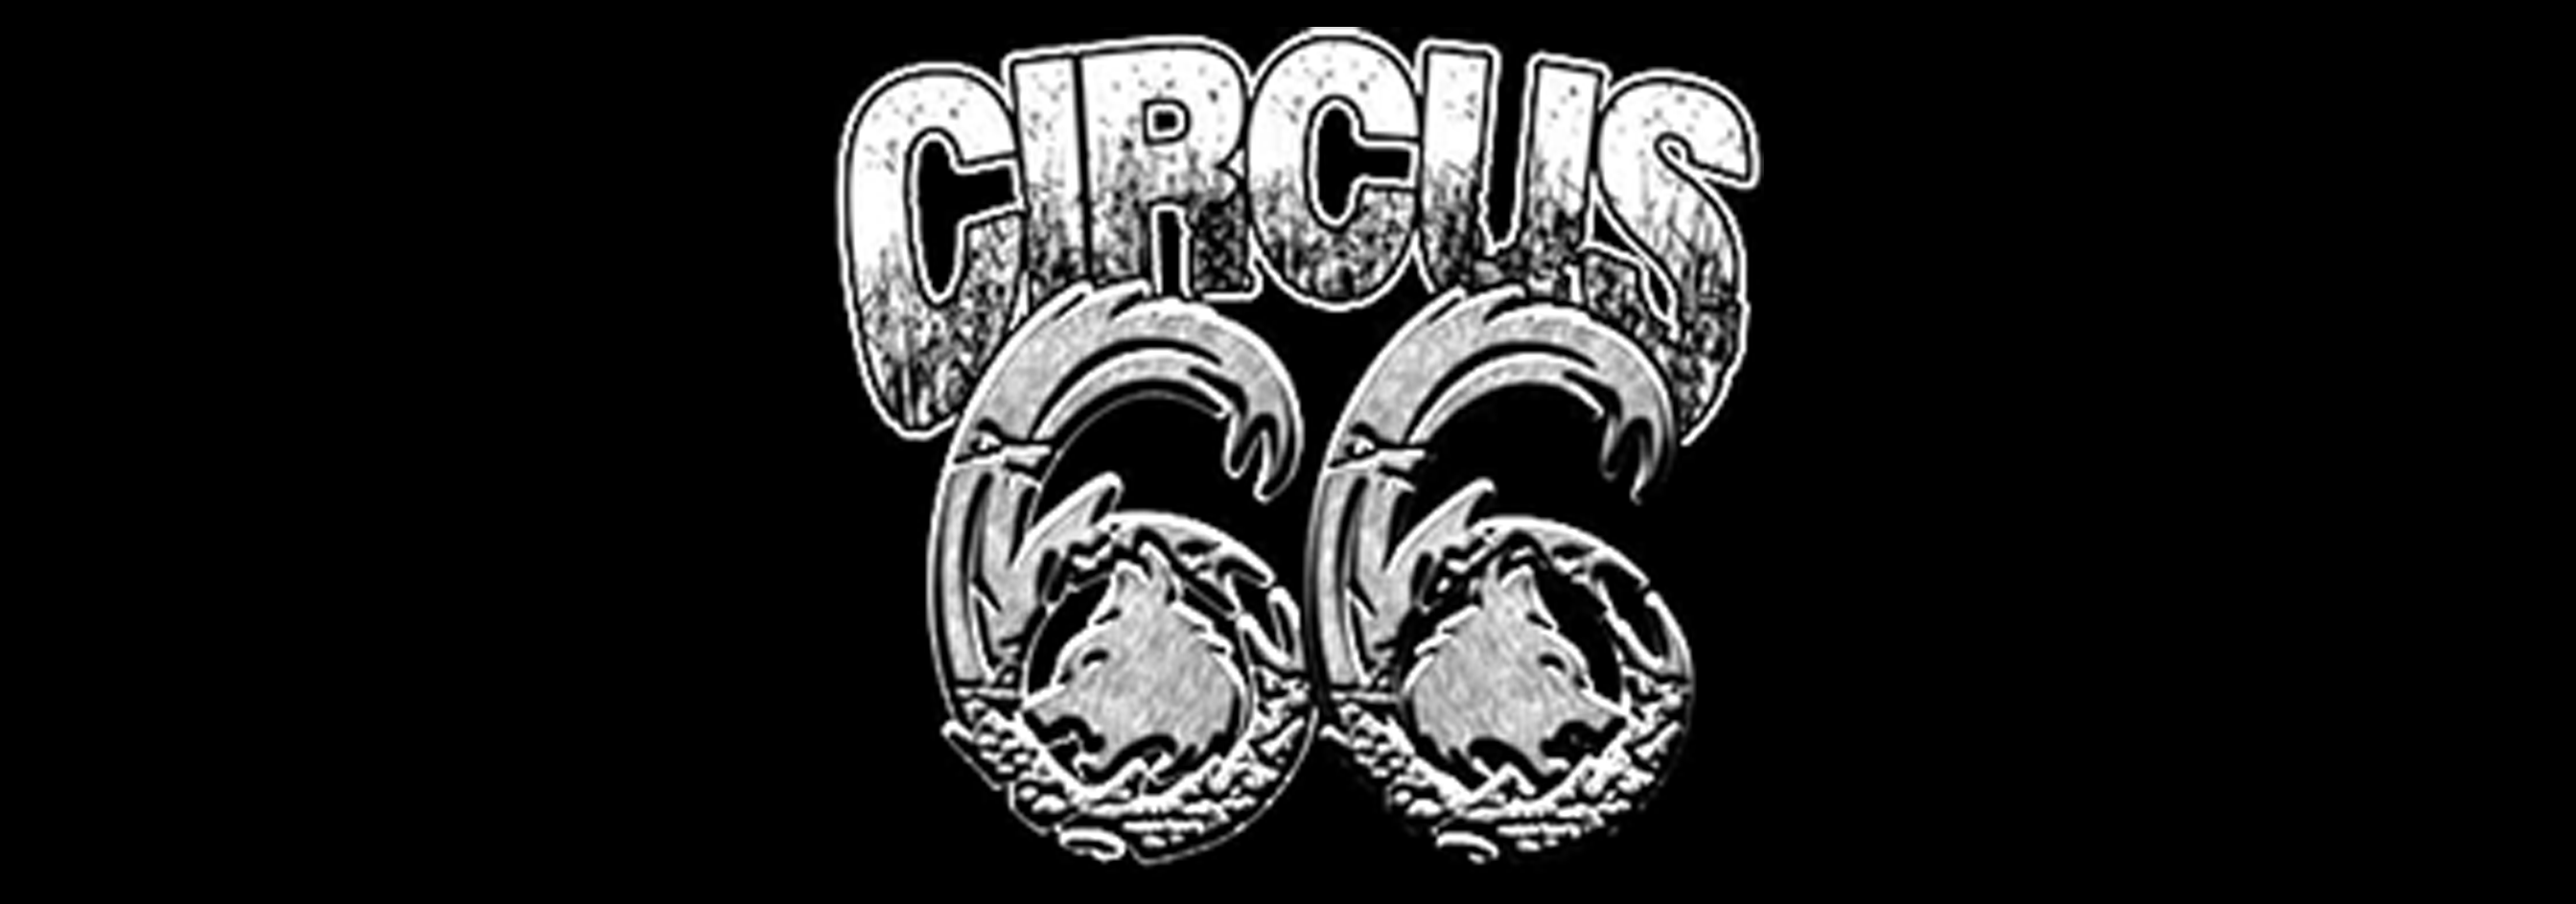 Circus 66